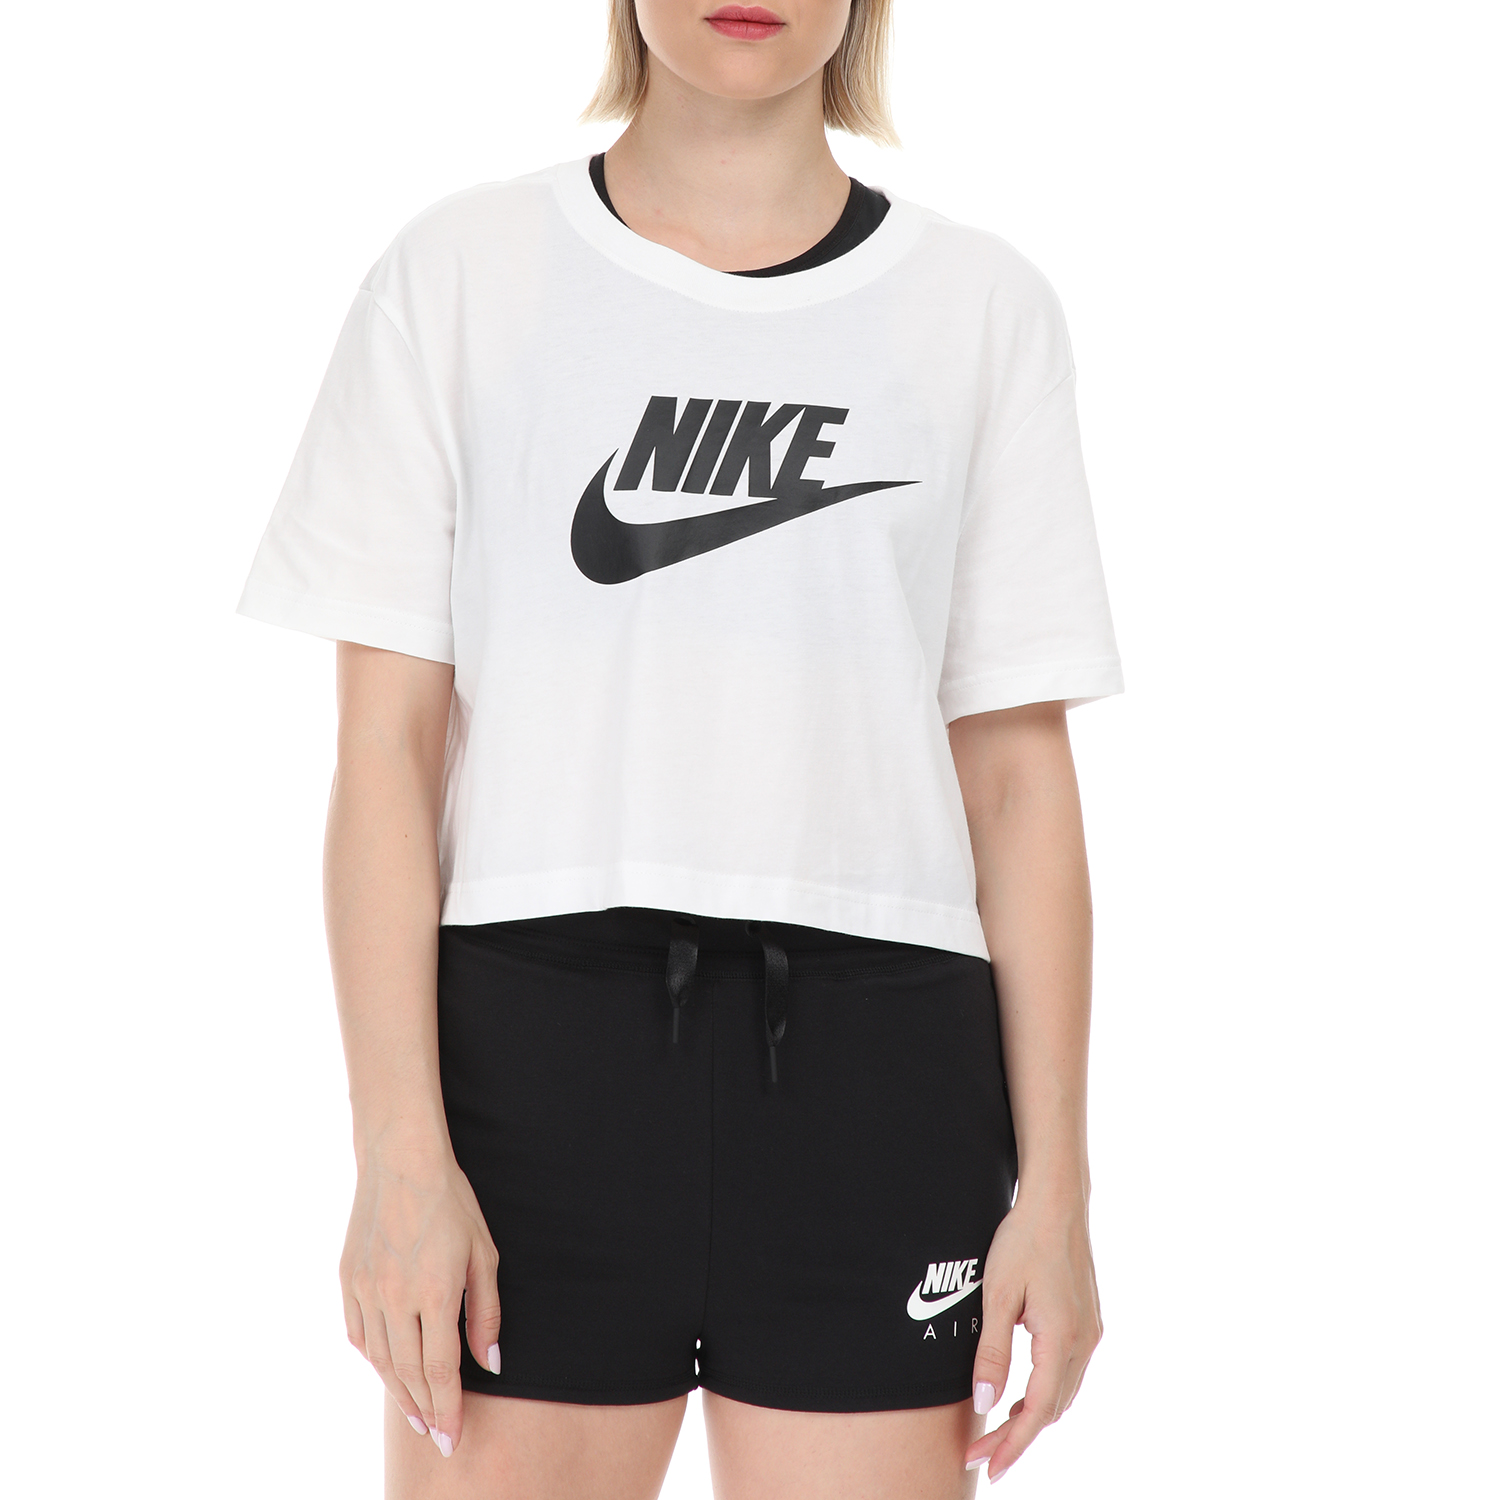 Γυναικεία/Ρούχα/Αθλητικά/T-shirt-Τοπ NIKE - Γυναικείο t-shirt ΝΙΚΕ NSW TEE ESSNTL CRP ICN FTR λευκό